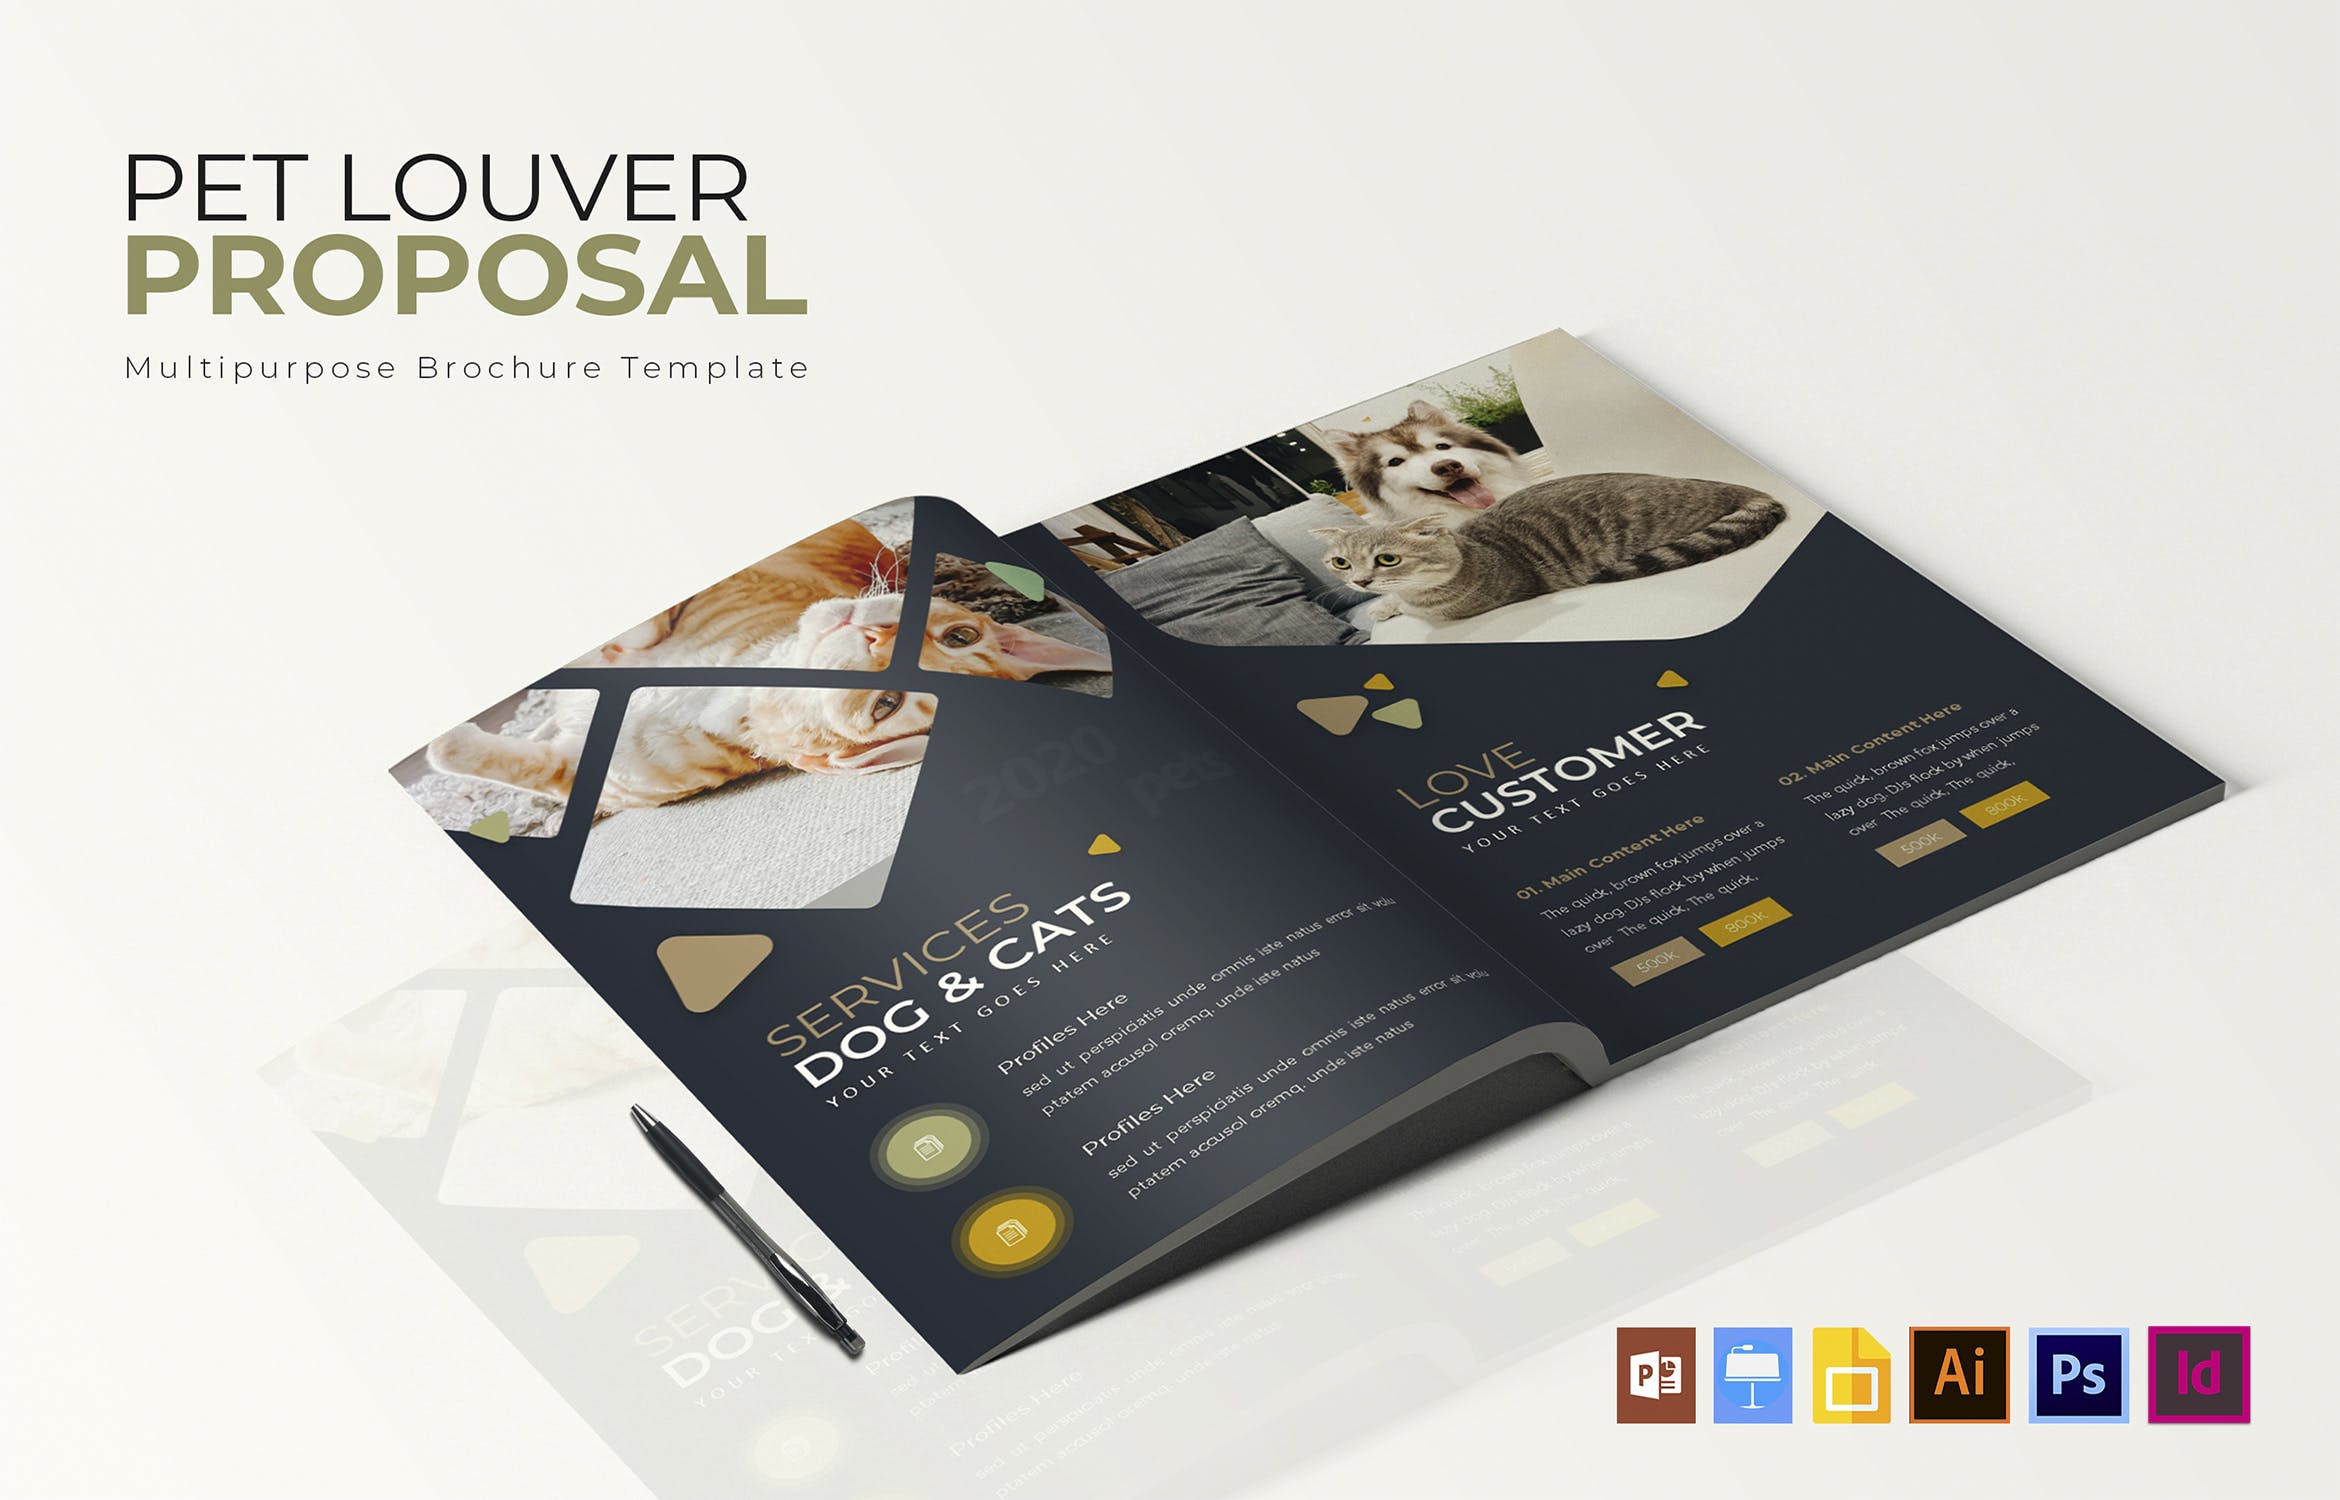 宠物主题宣传画册设计模板 Pets Louver | Brochure Template插图(1)